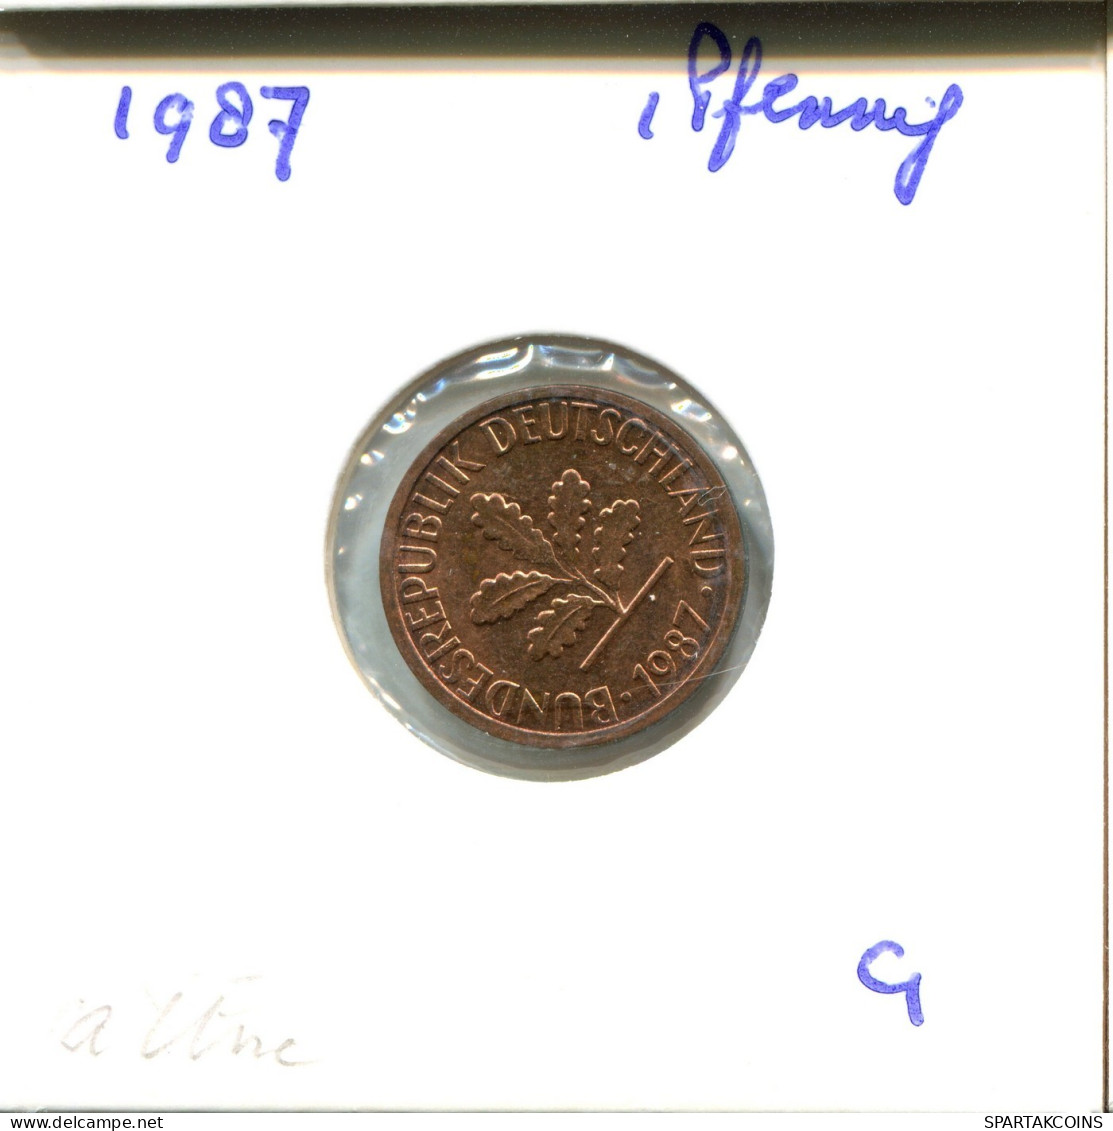 1 PFENNIG 1987 G BRD ALEMANIA Moneda GERMANY #DB081.E.A - 1 Pfennig